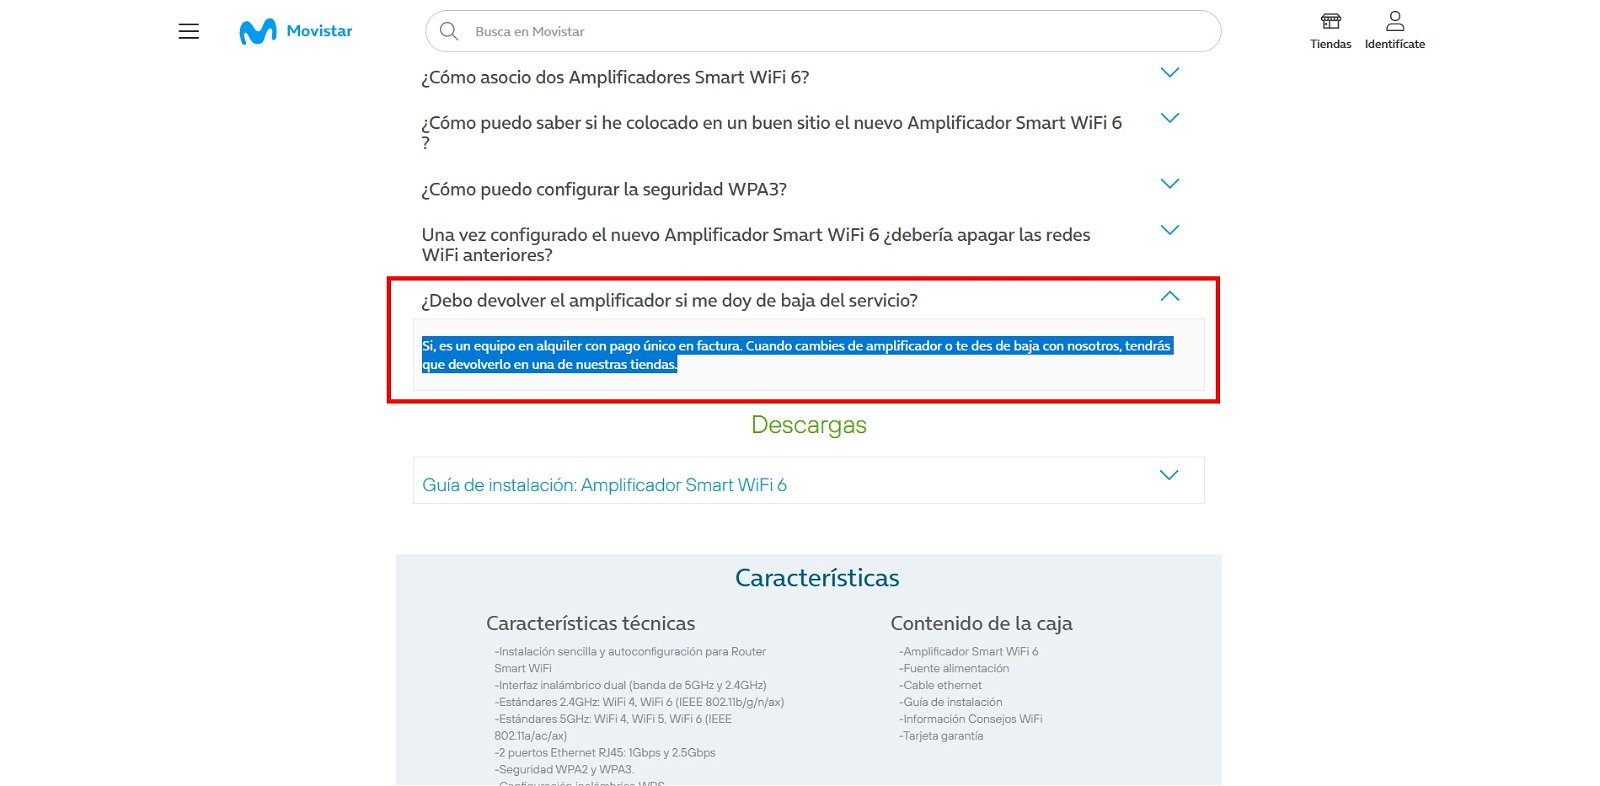 Amplificador Smart WiFi vs. Amplificador Smart WiFi 6 de Movistar